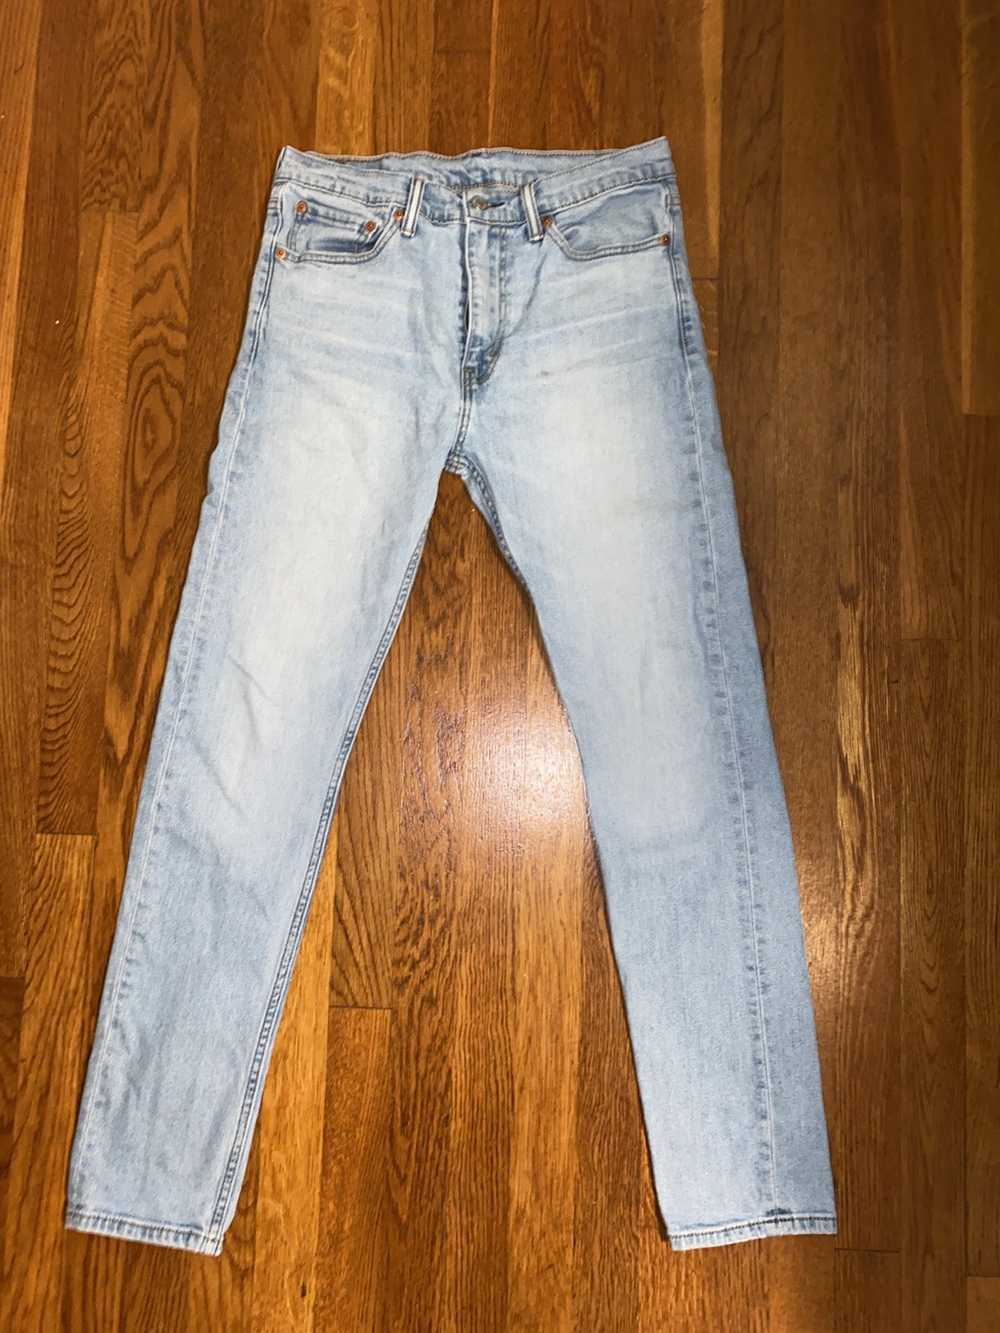 Levi's Levi’s Slim Fit Jeans - image 1